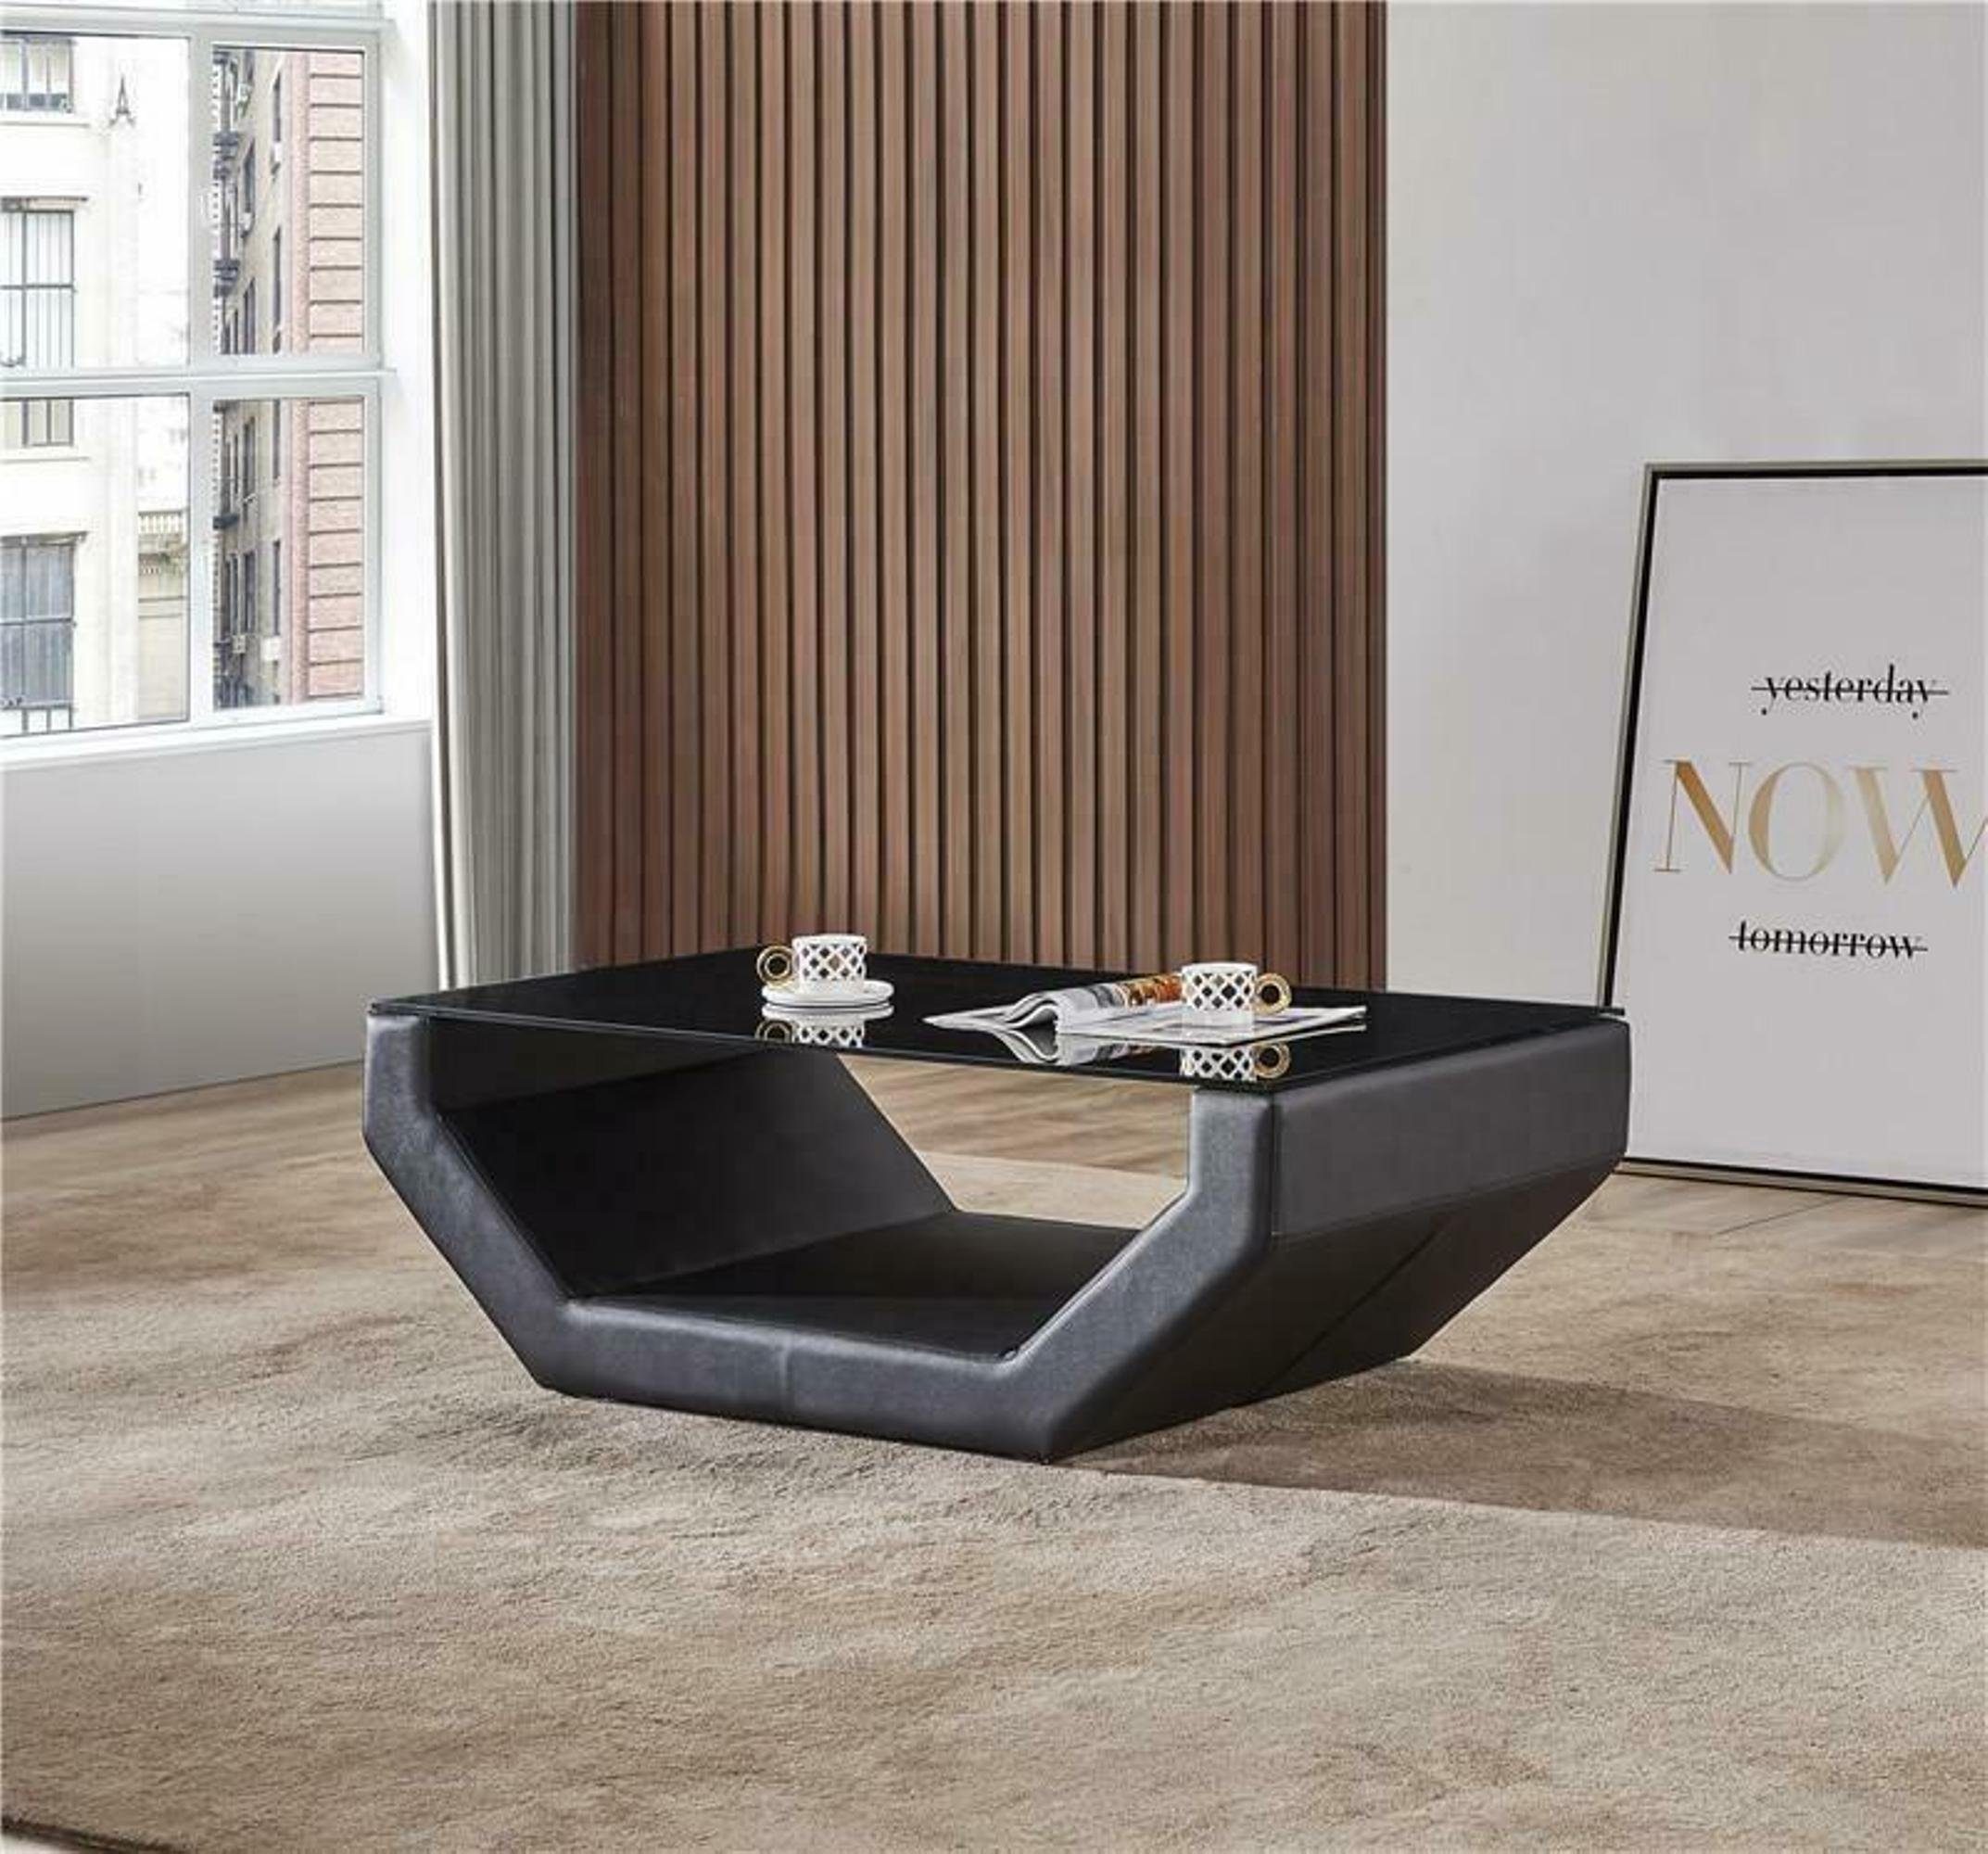 Design Beistell Luxus JVmoebel Glas Couch Sofa Couchtische Couchtisch Tisch Edler Sofort